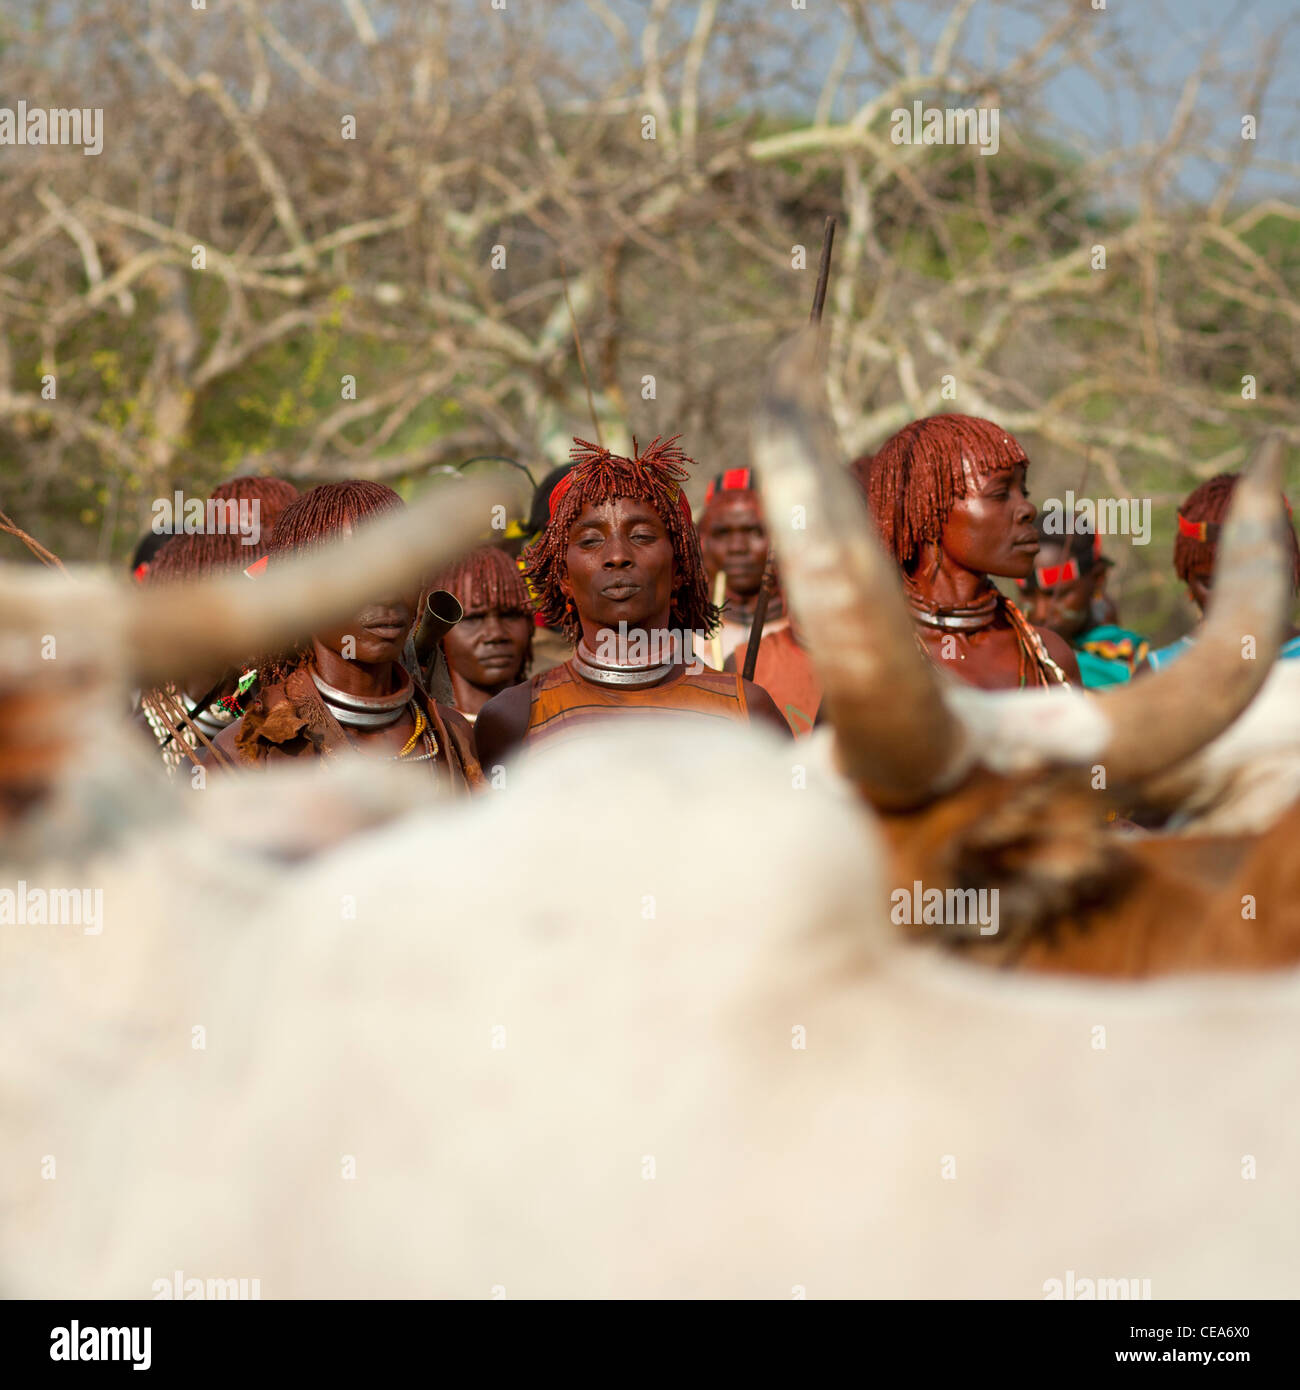 Hamer gente celebrándolo Bull Jumping ceremonia por danzas y música ritual tradicional Valle de Omo Etiopía Foto de stock